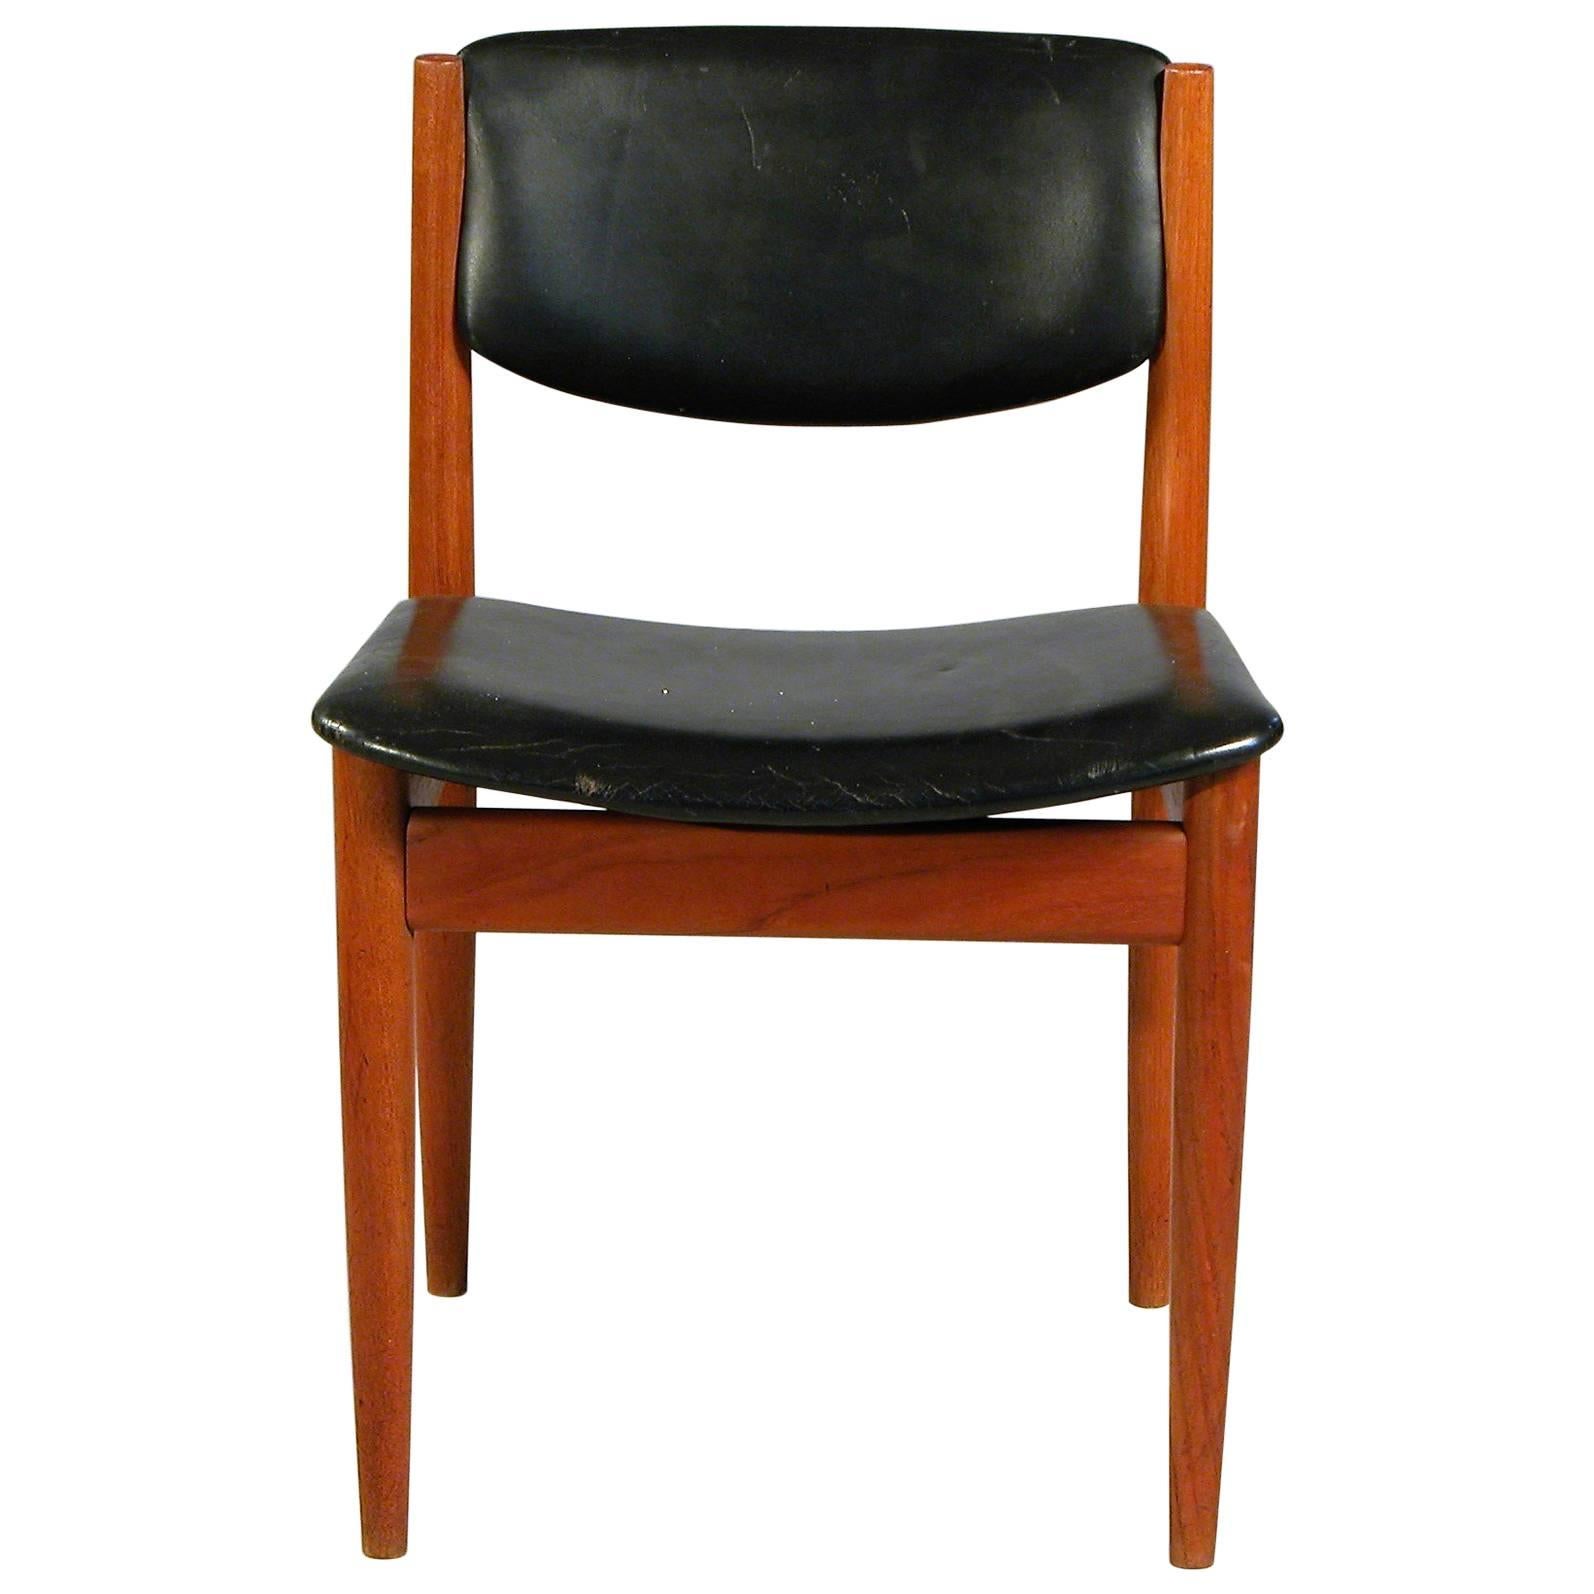 1960s Finn Juhl Model 198 Dining Chair in Teak and Black Leather - France & Sonn